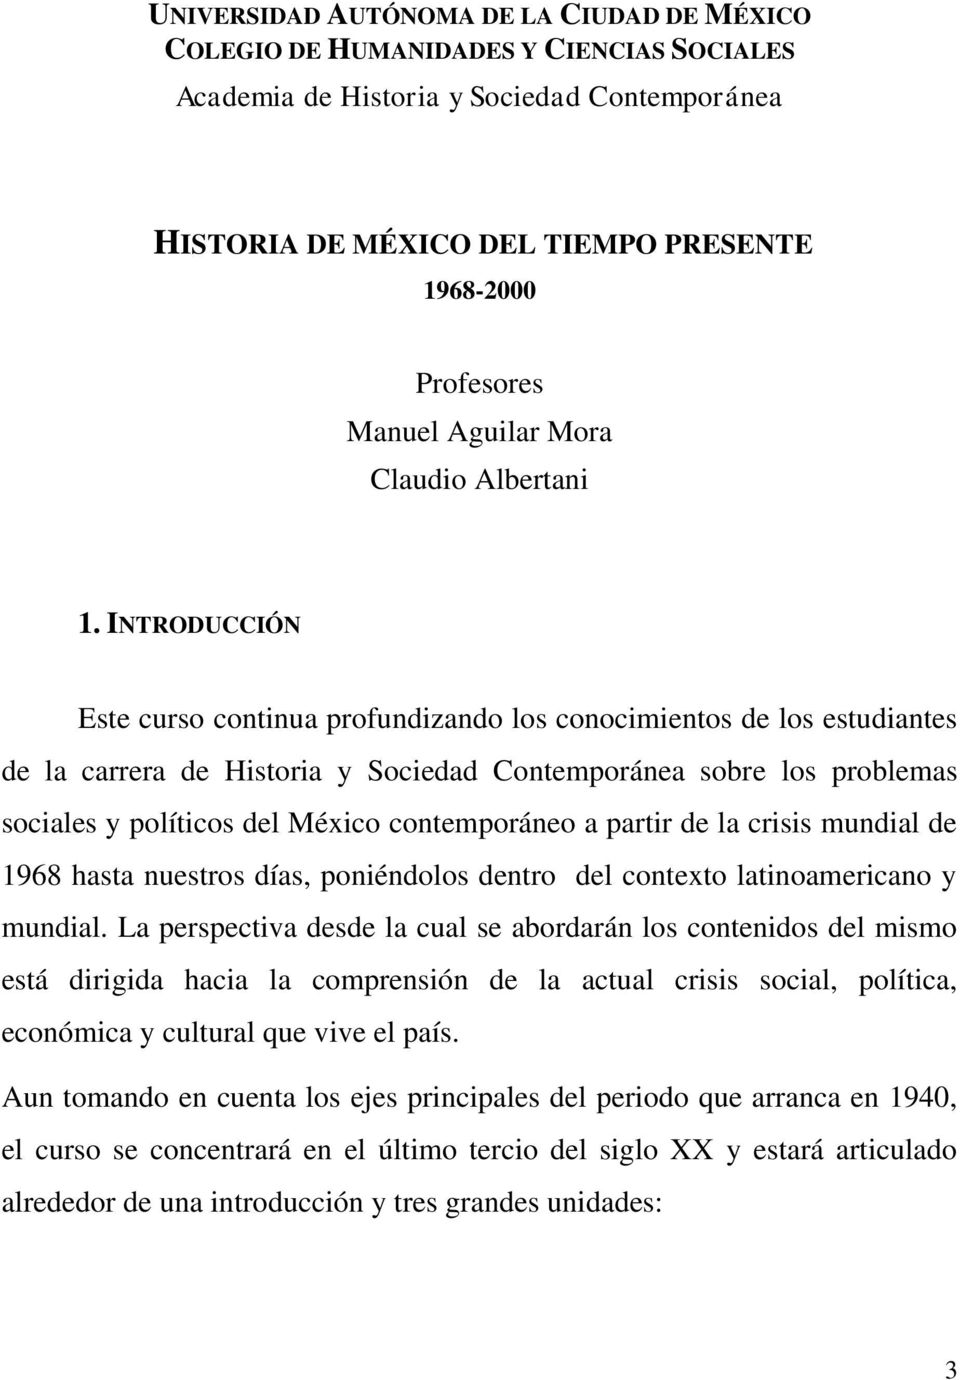 INTRODUCCIÓN Este curso continua profundizando los conocimientos de los estudiantes de la carrera de Historia y Sociedad Contemporánea sobre los problemas sociales y políticos del México